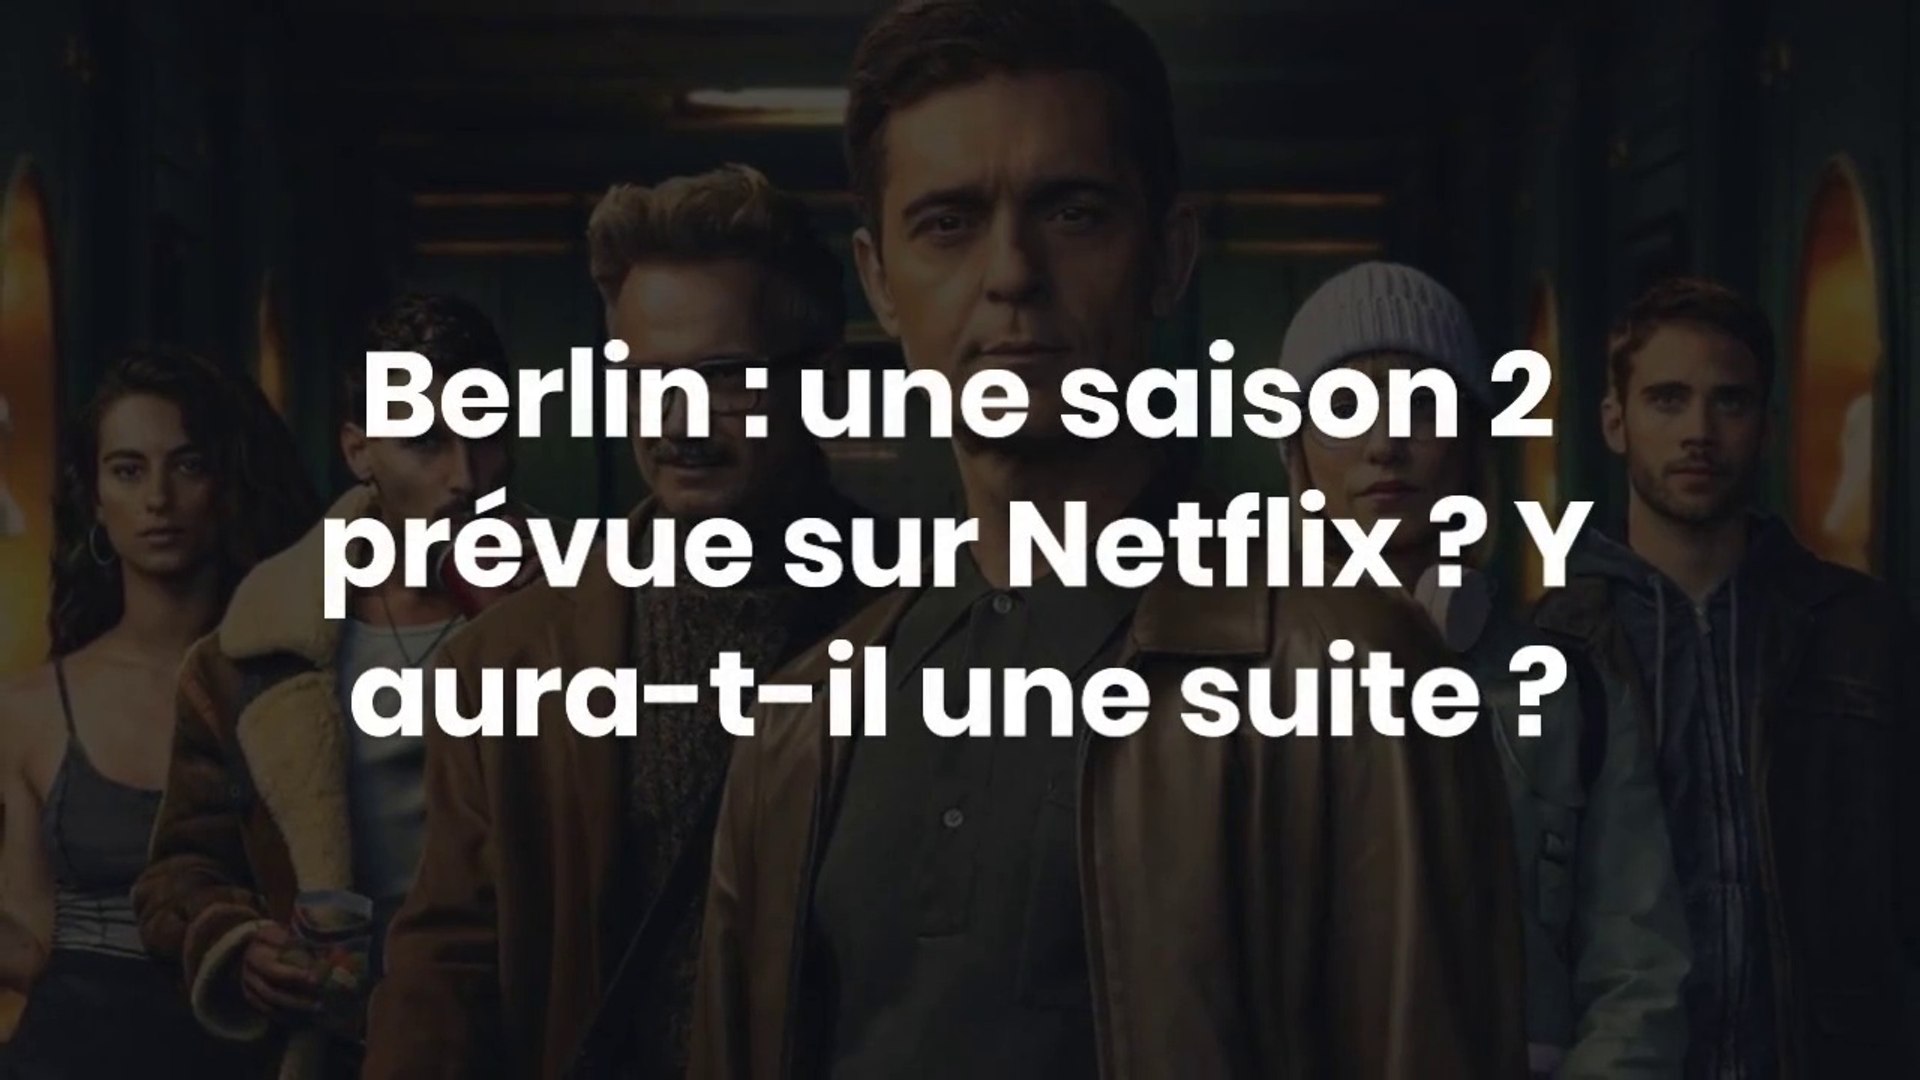 Berlin : une saison 2 prévue sur Netflix ? - Vidéo Dailymotion